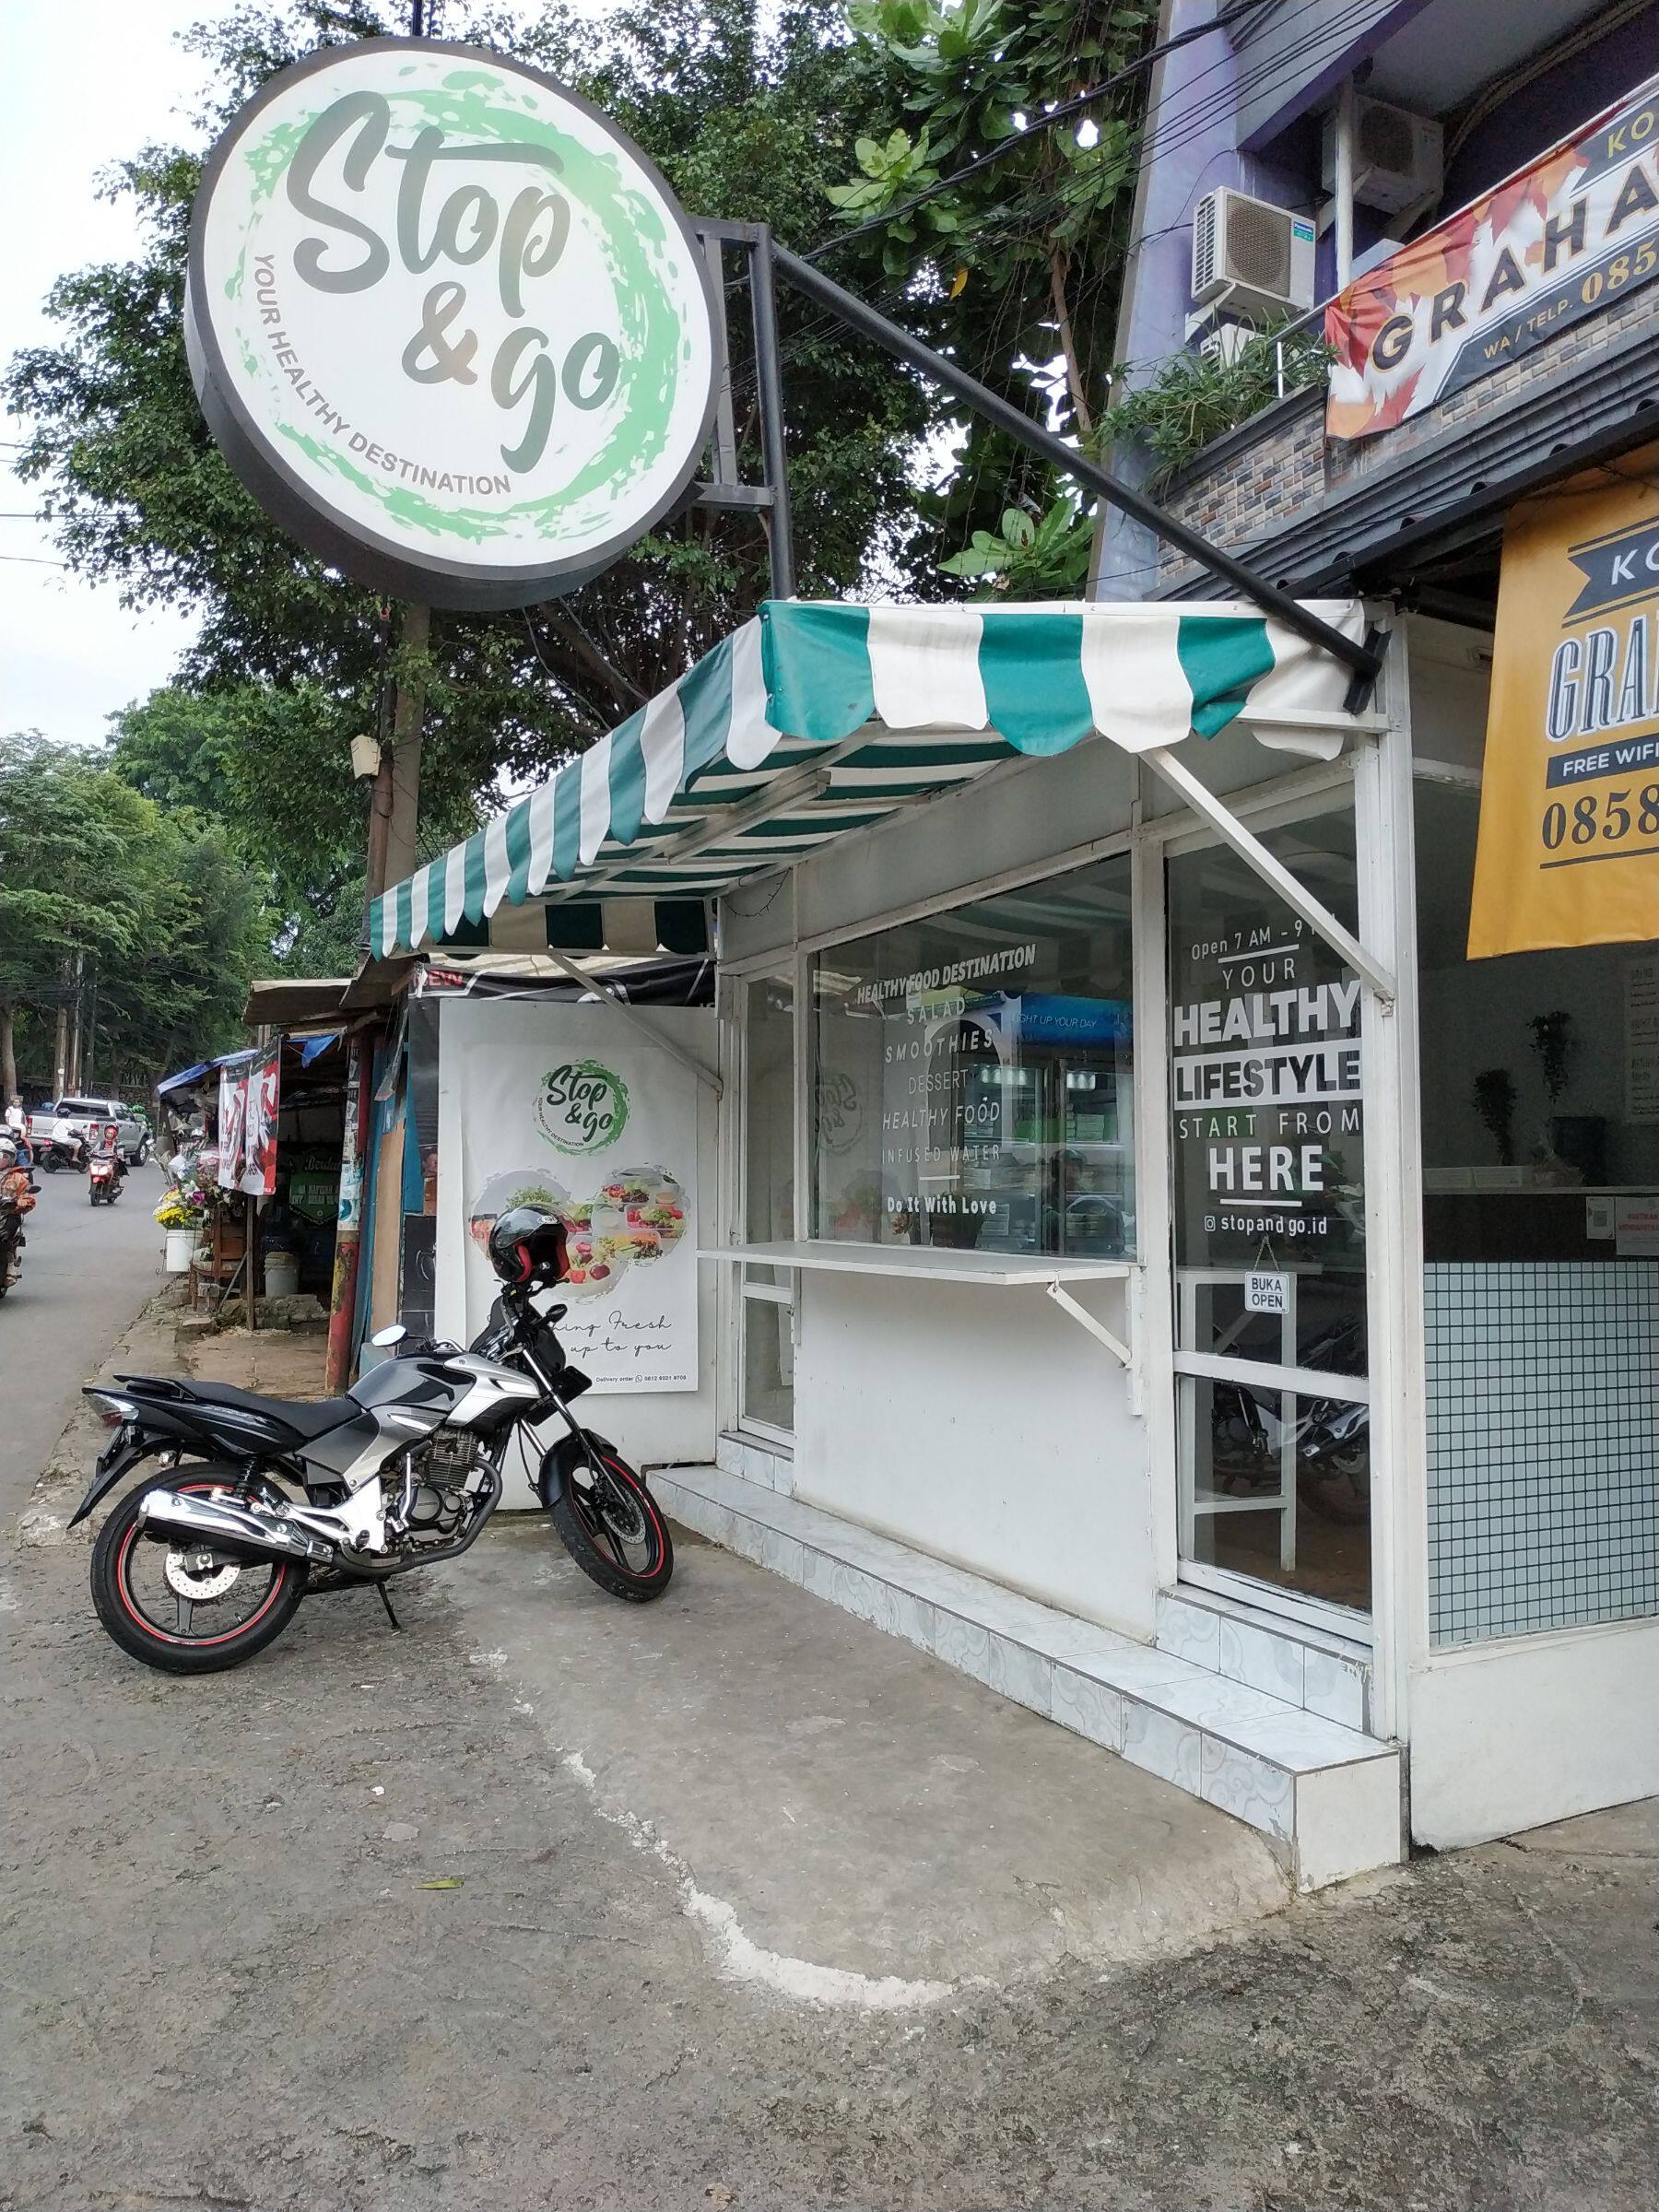 Stop & Go Restoran Sehat Di Jakarta